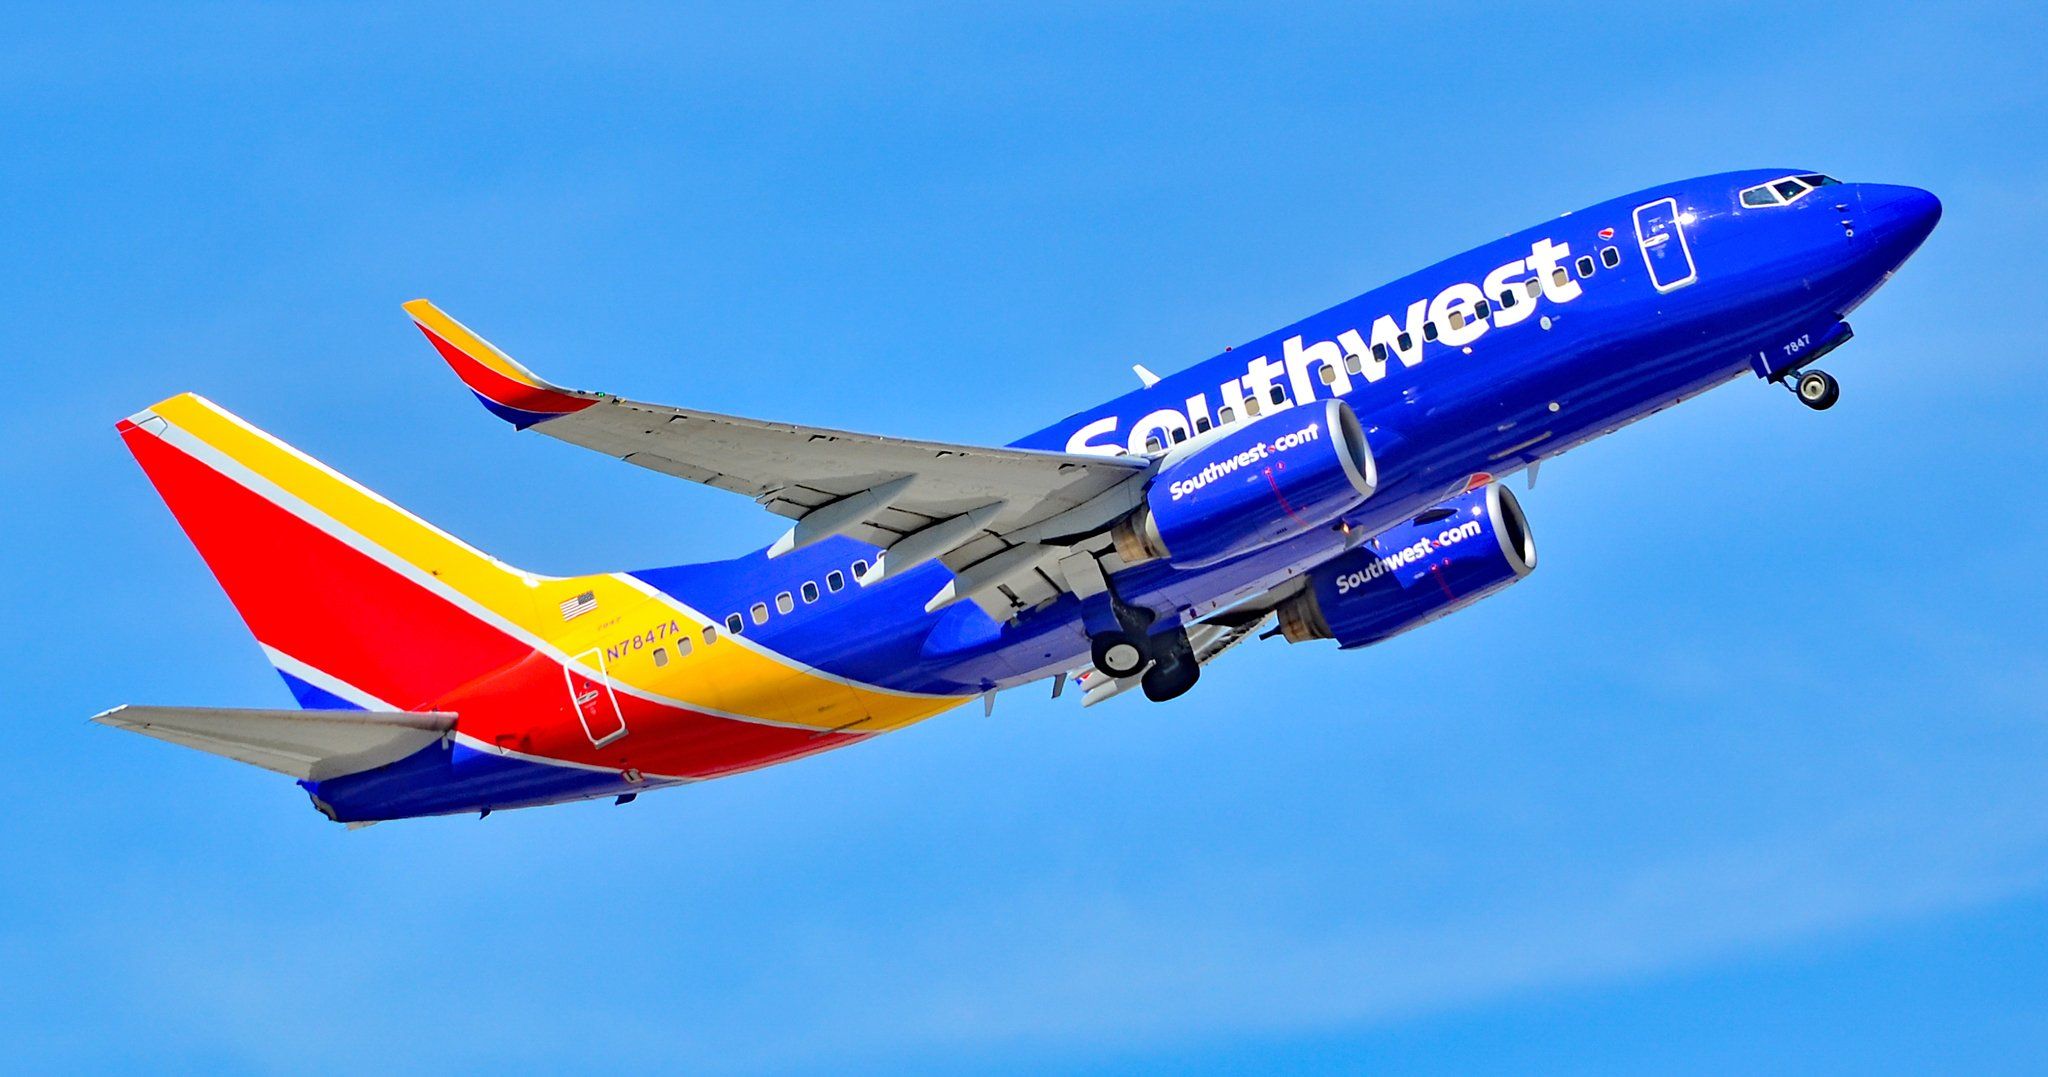 Southwest Airlines nao servira mais amendoim em voos